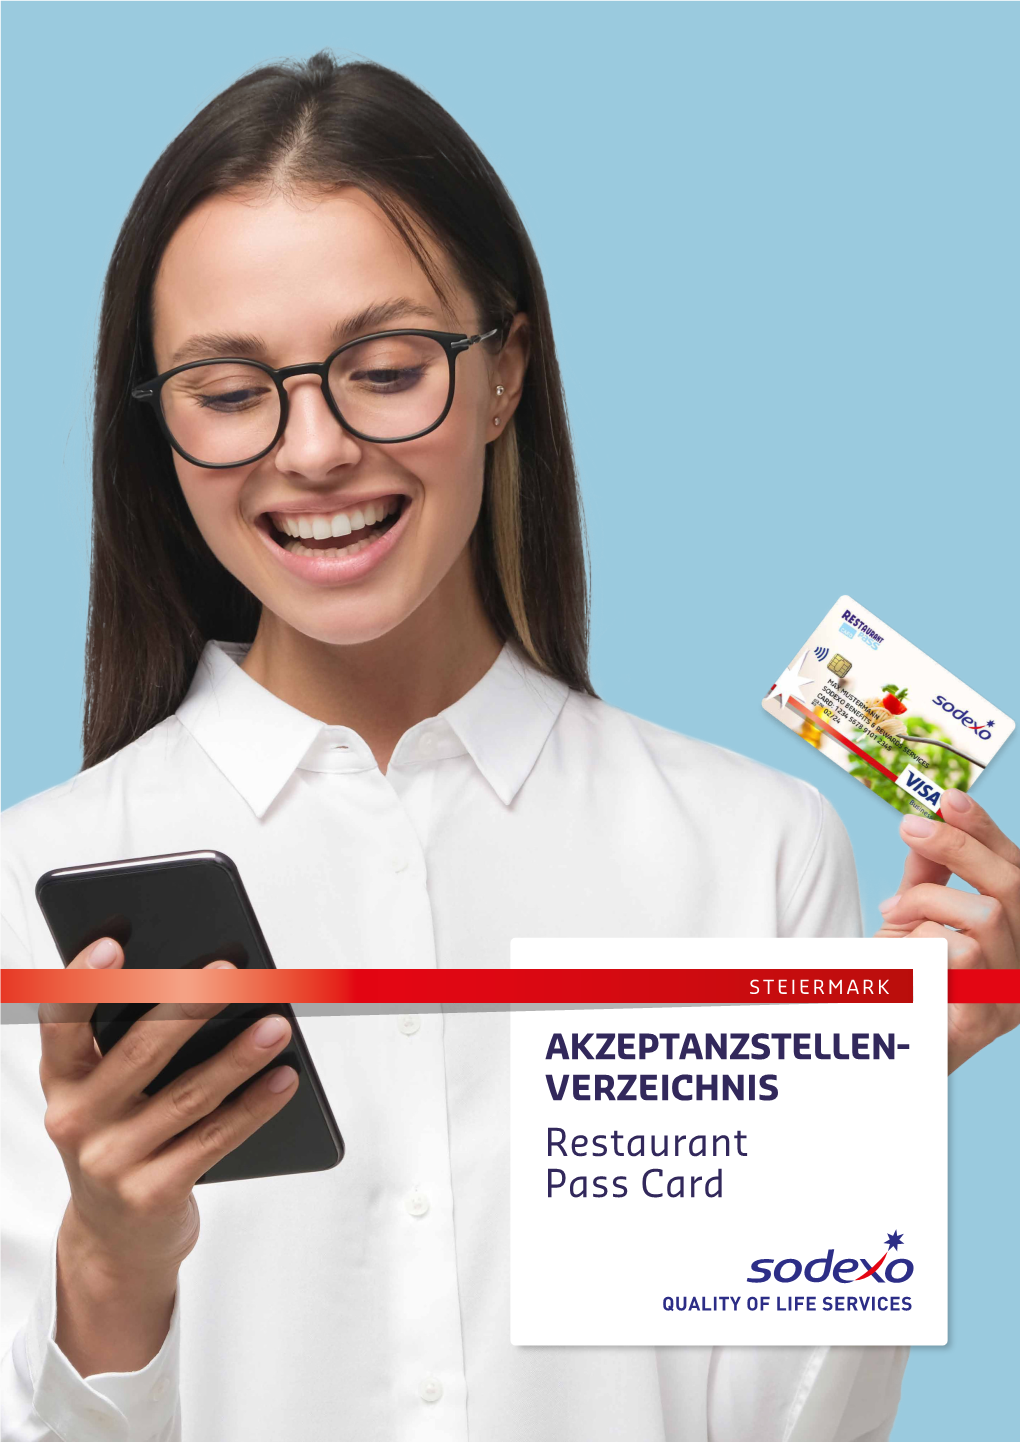 AKZEPTANZSTELLENVERZEICHNIS Restaurant Pass Card